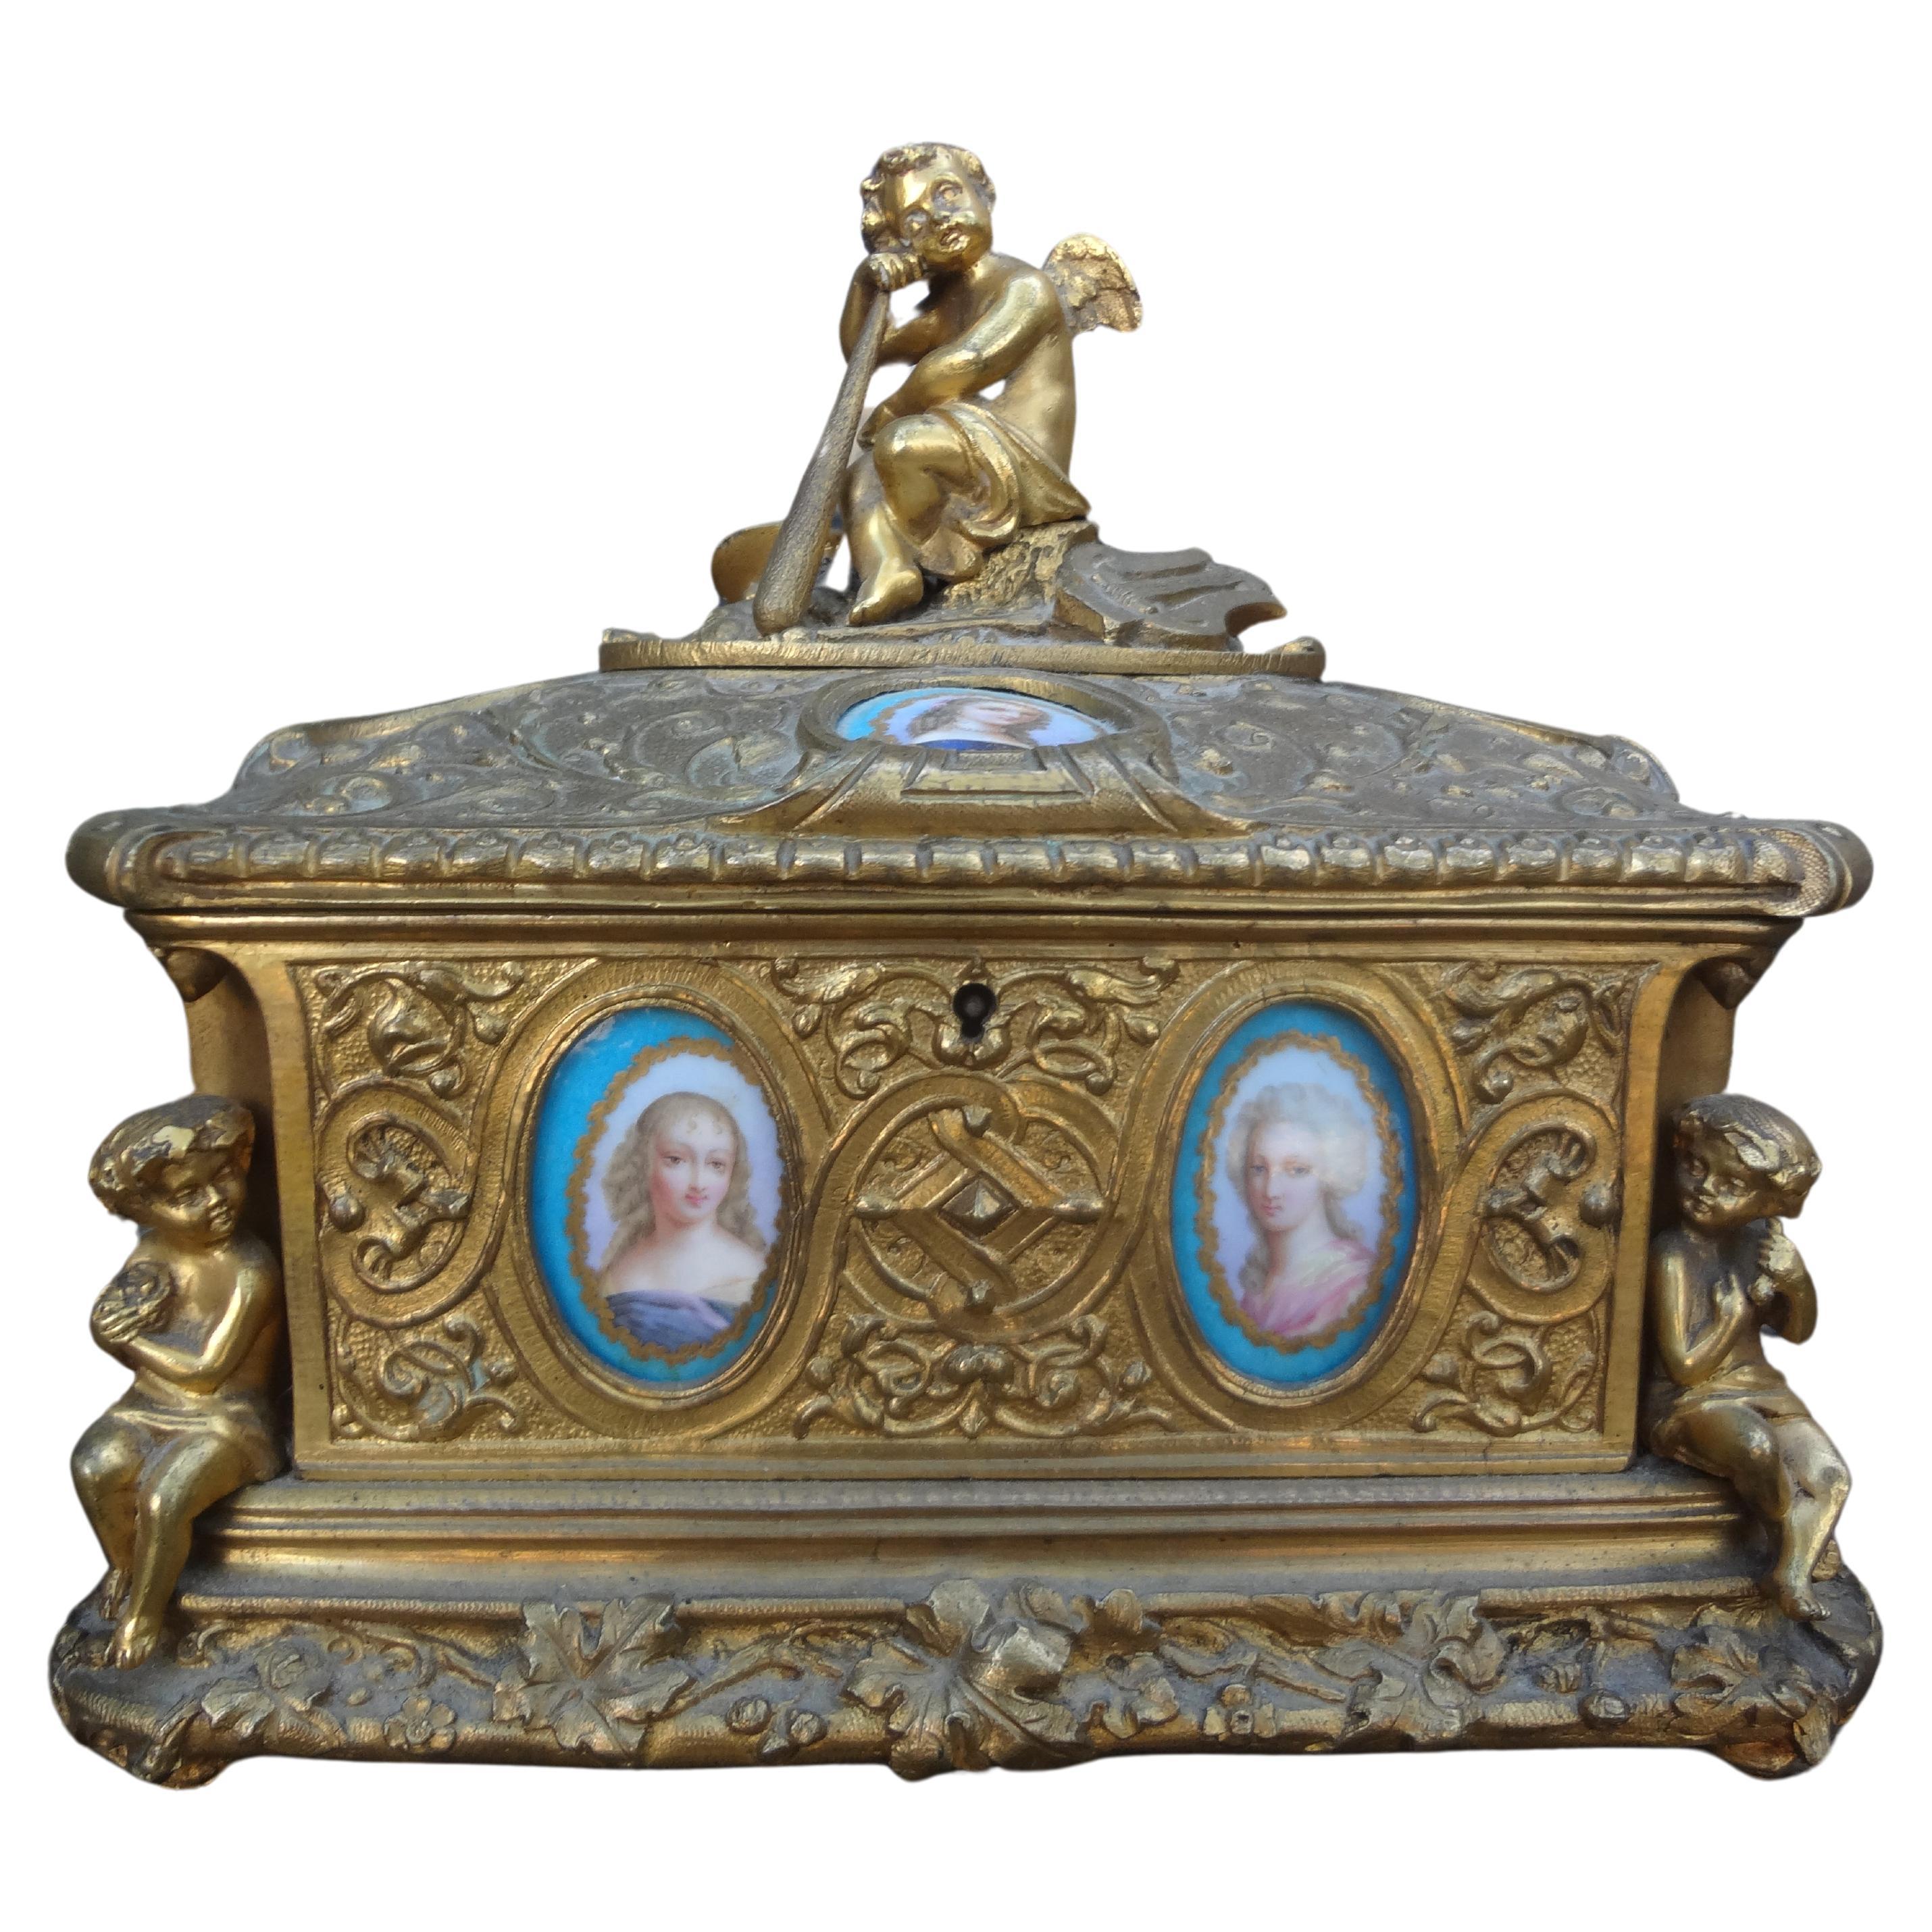 Französische Bronzeschachtel im Louis-XV-Stil des 19. Jahrhunderts.